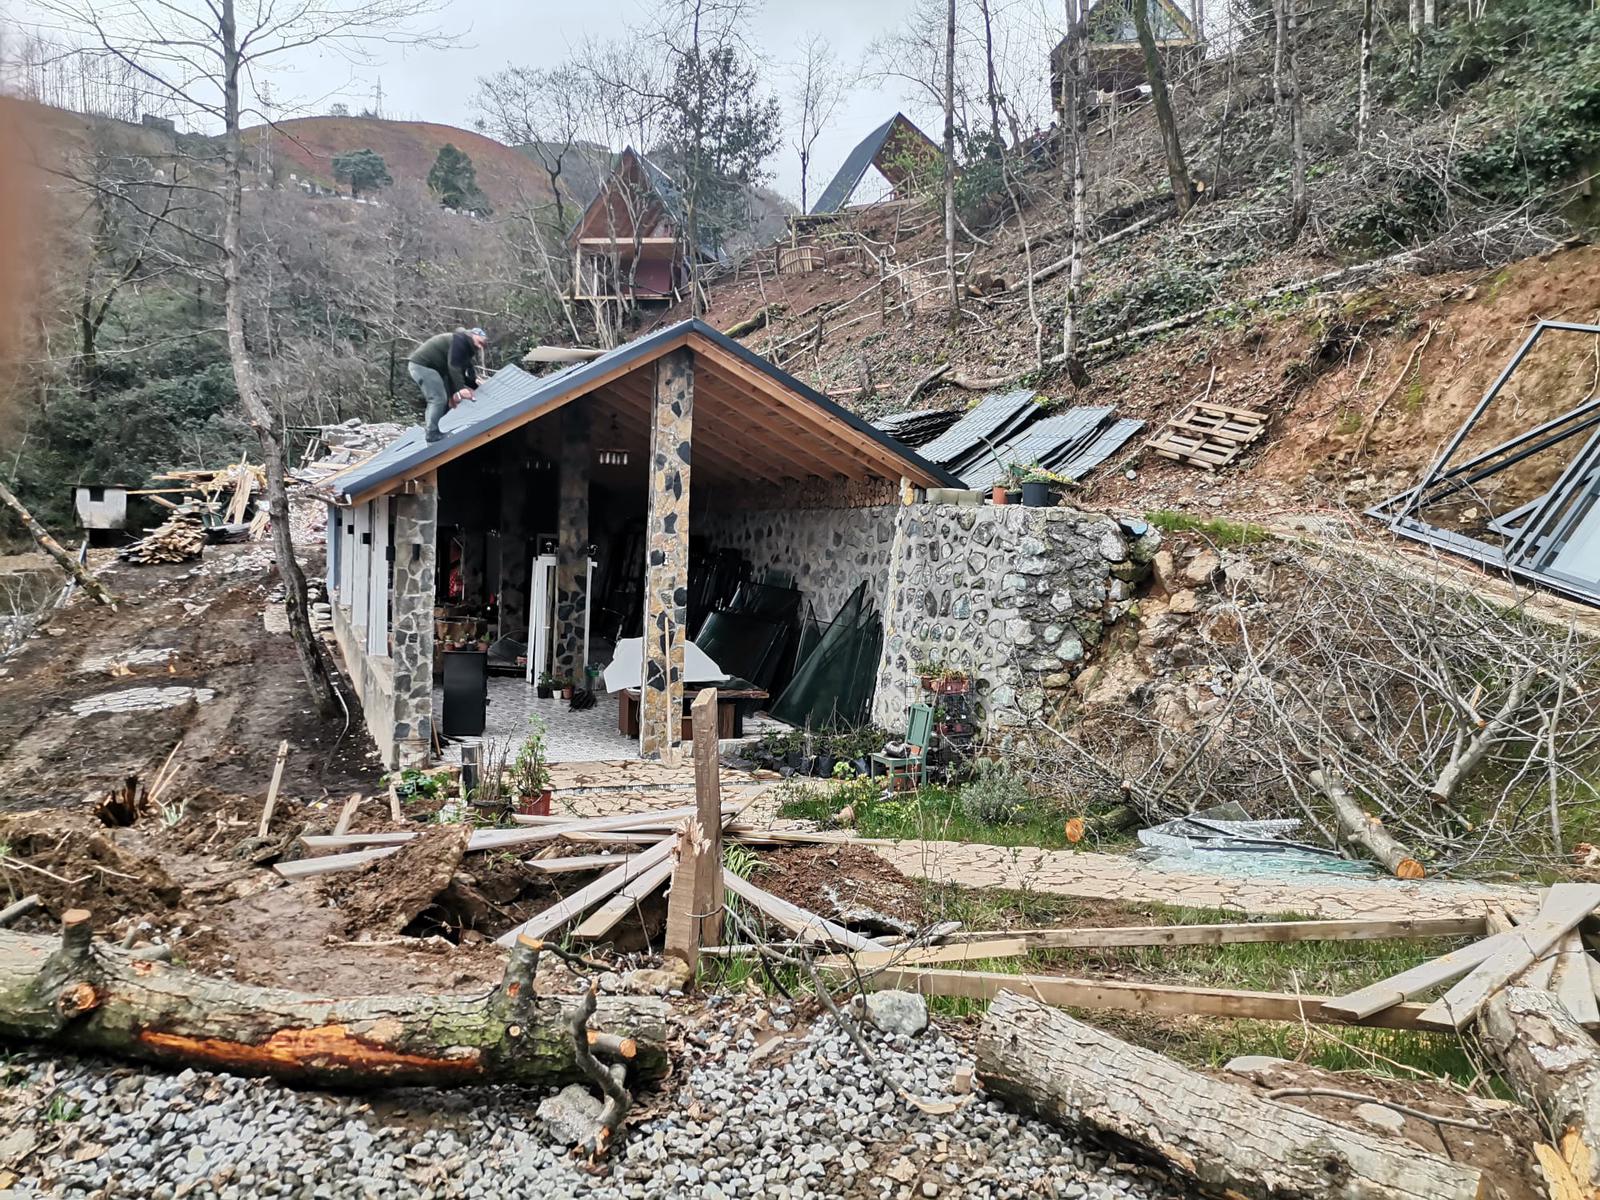 Fındıklı ilçesi Yeniköy köyündeki 1 adet restoran ve 11 adet bungalov yapı hakkında yıkım kararı alınmıştır.